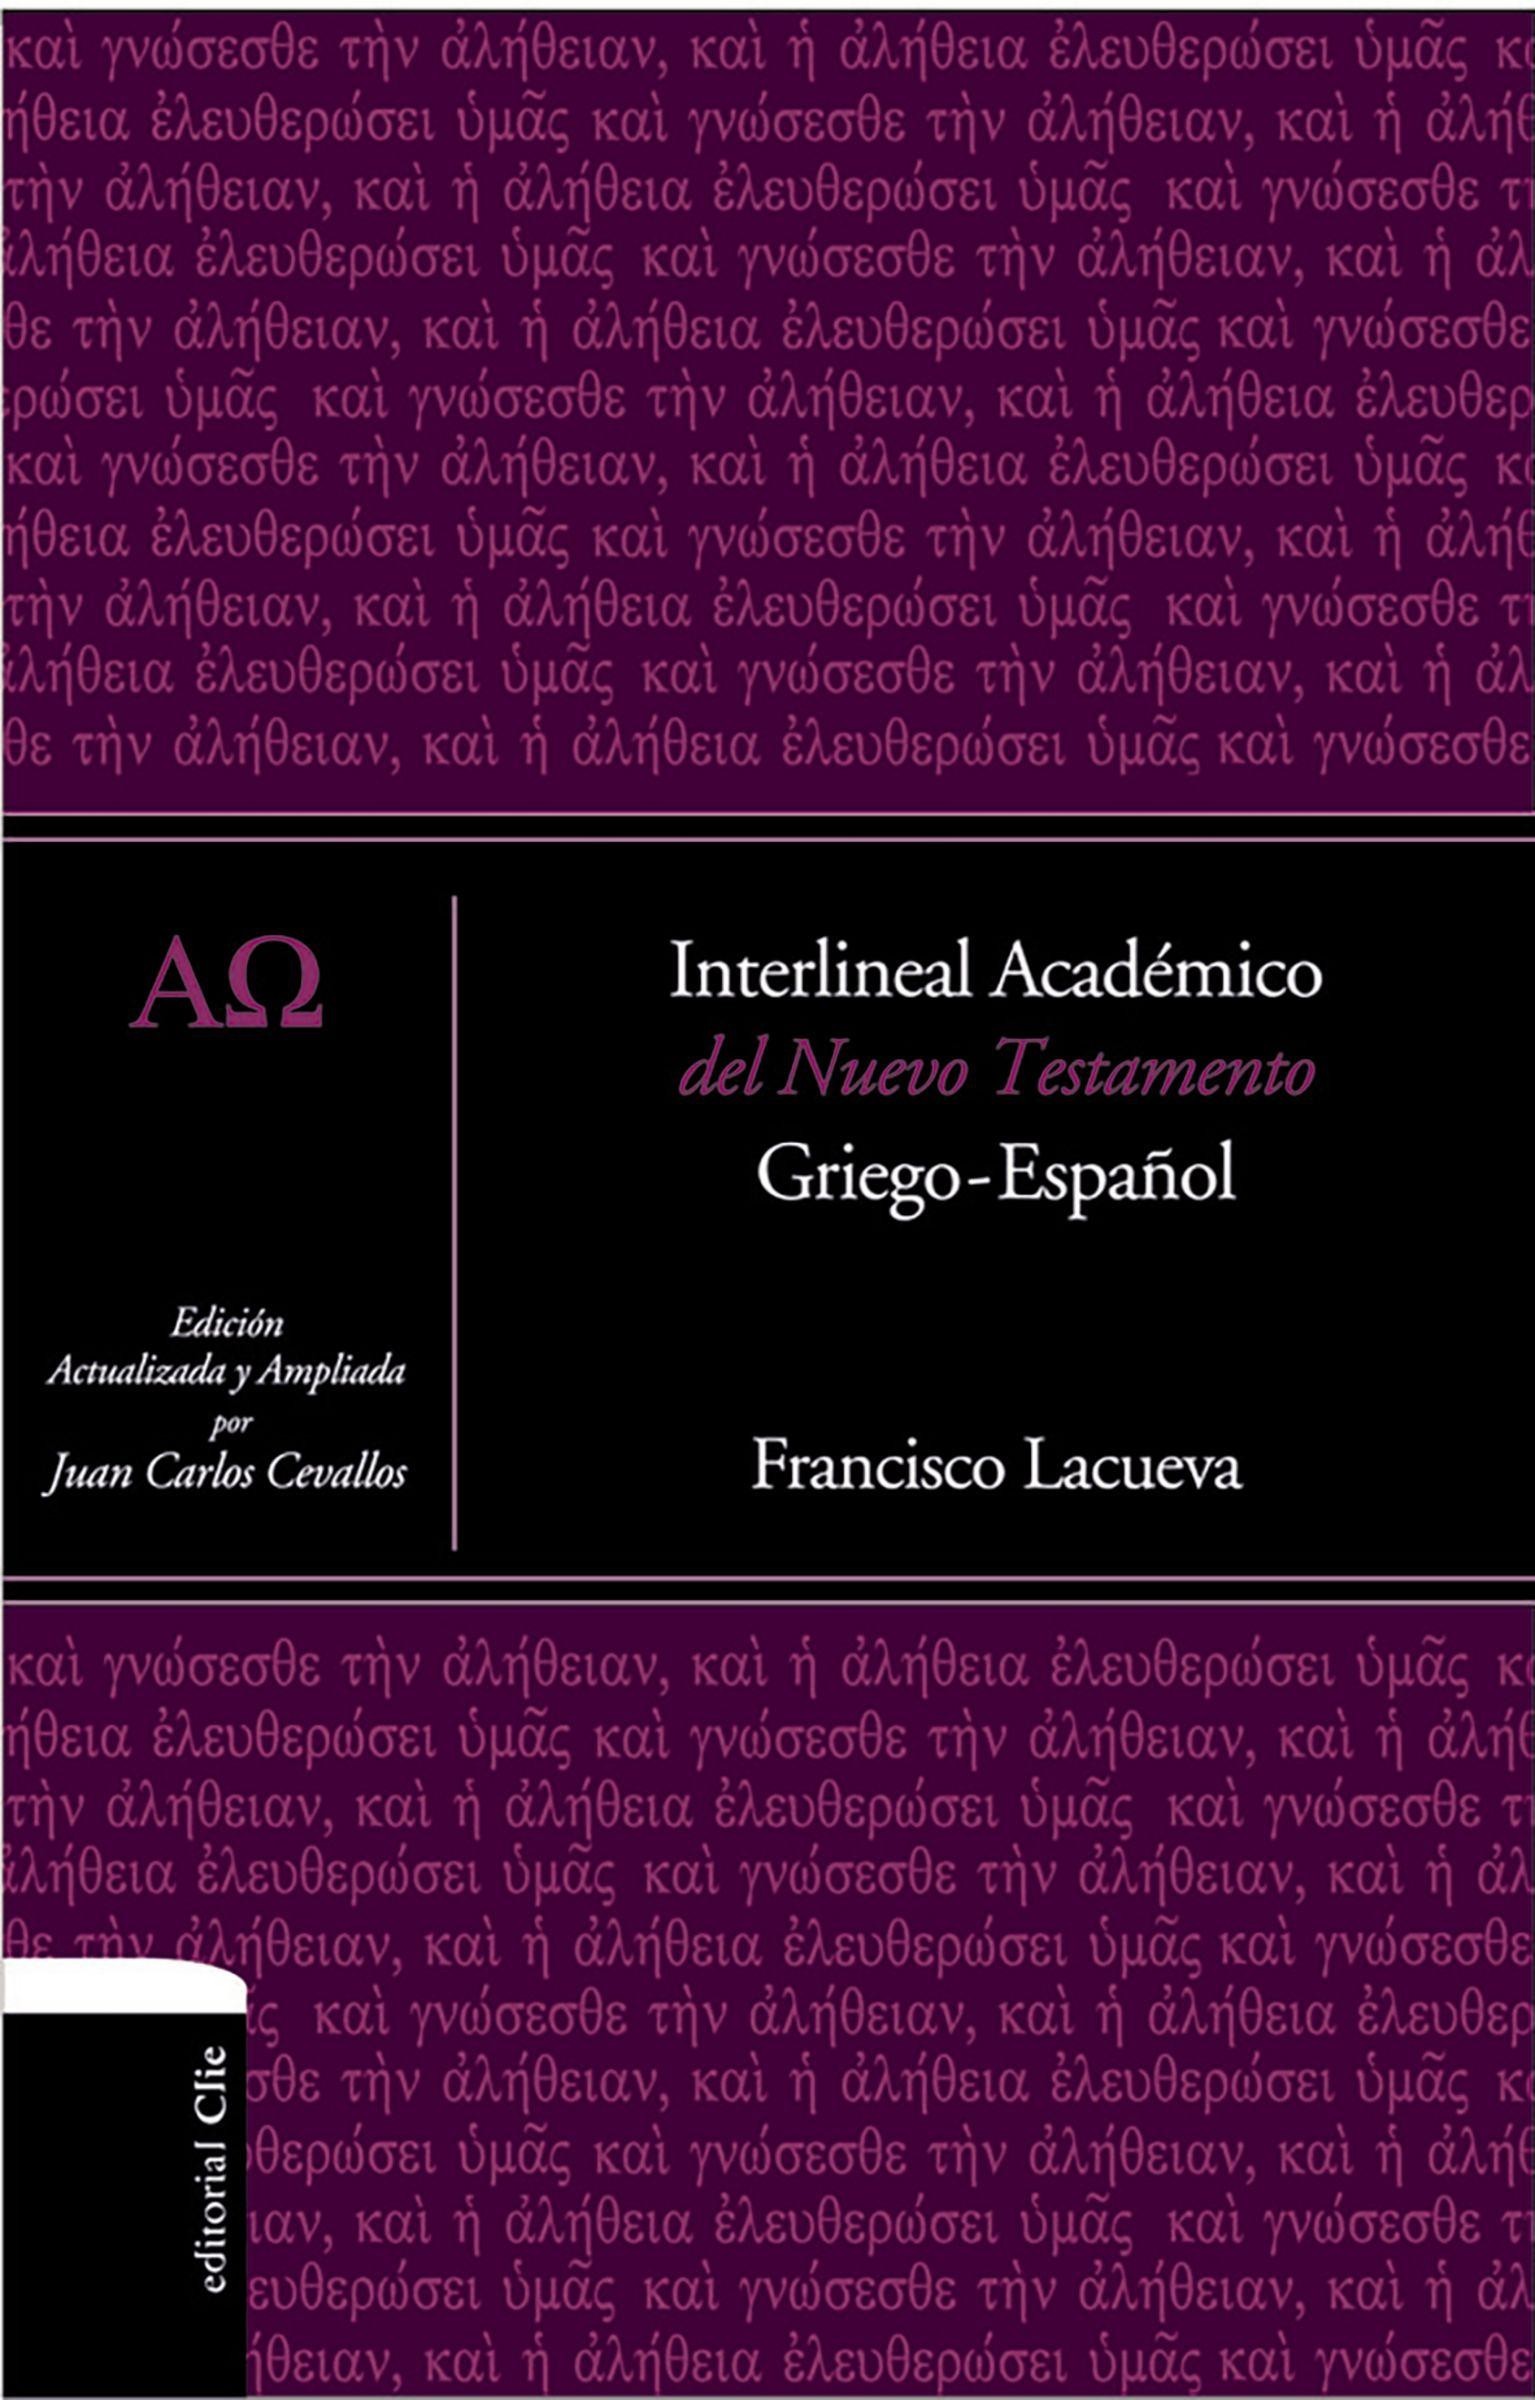 Interlineal académico del Nuevo Testamento Griego-Español